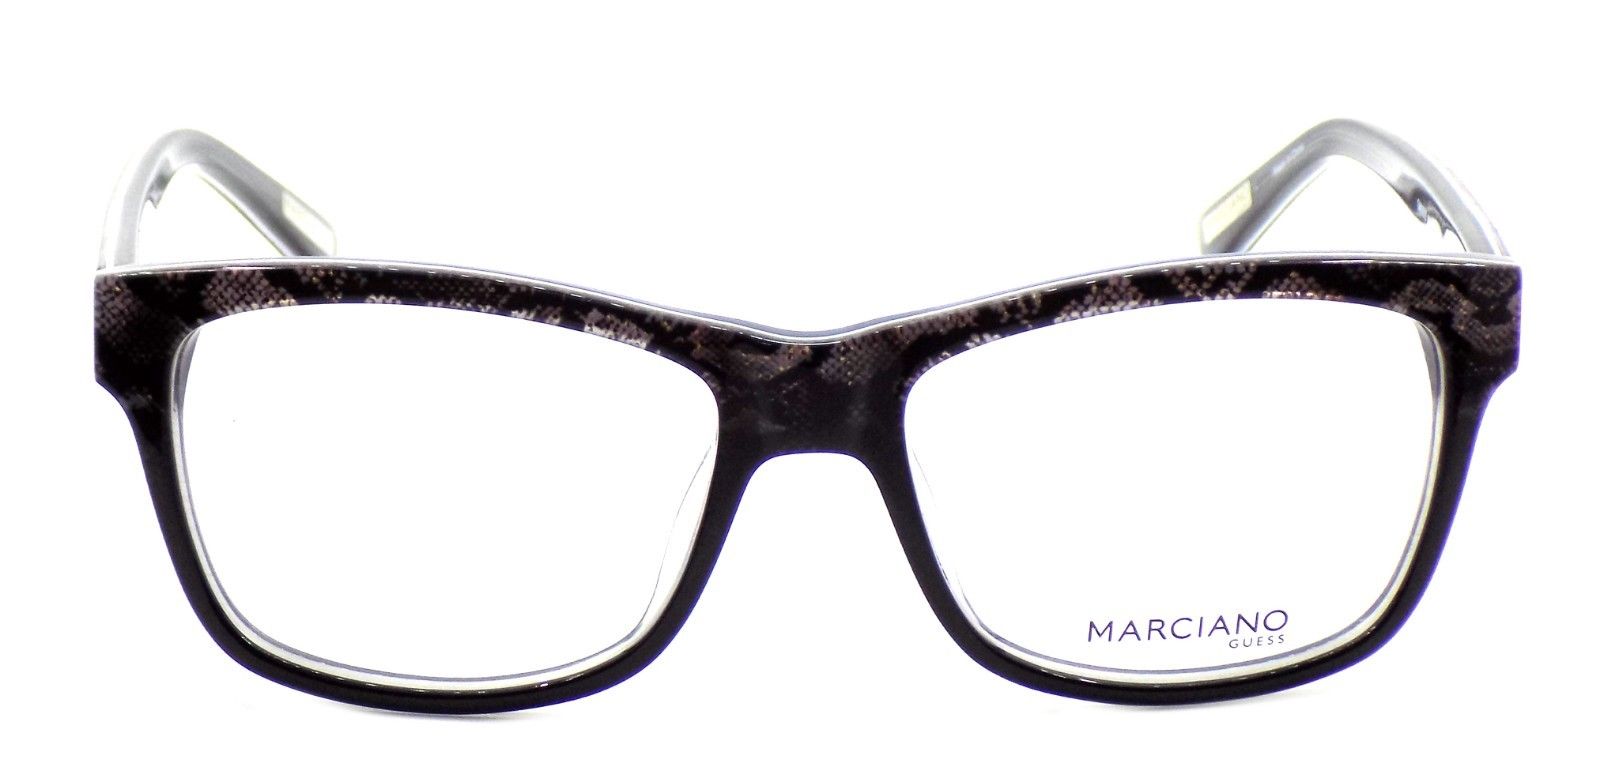 2-GUESS by Marciano GM0279 005 Women's Eyeglasses Frames 53-16-135 Black / Multi-664689779901-IKSpecs